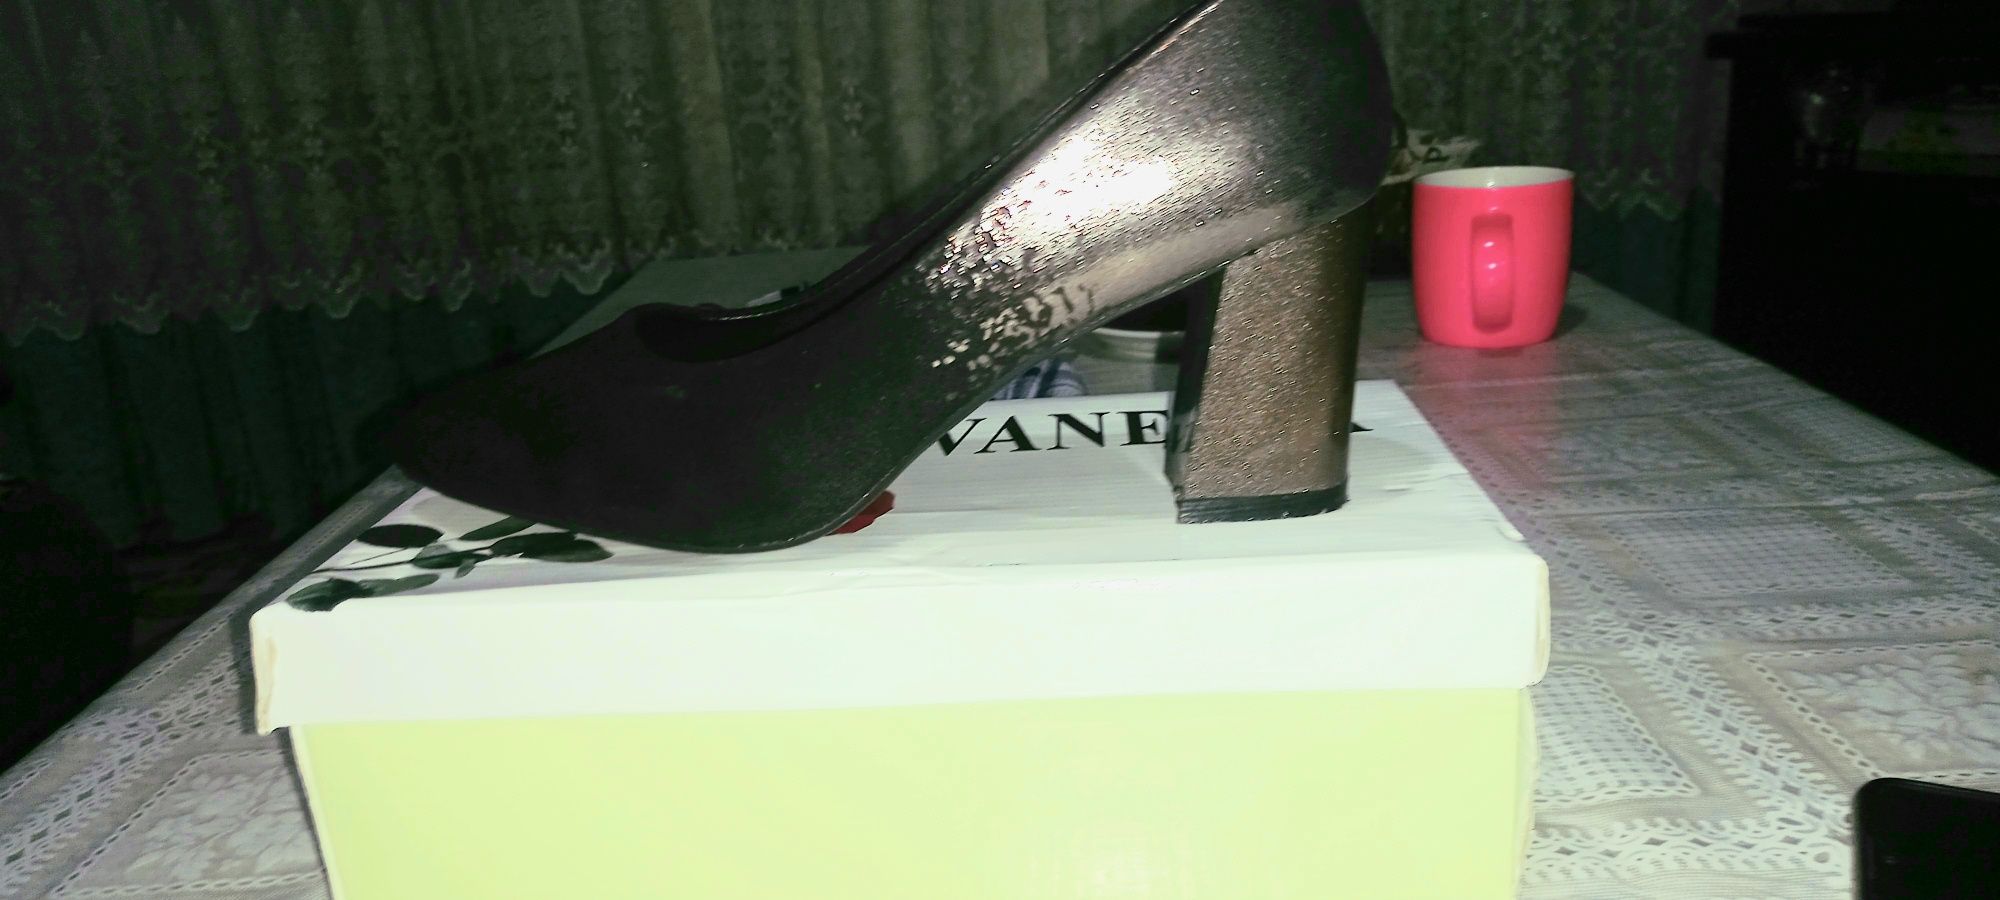 Туфли женские чёрные